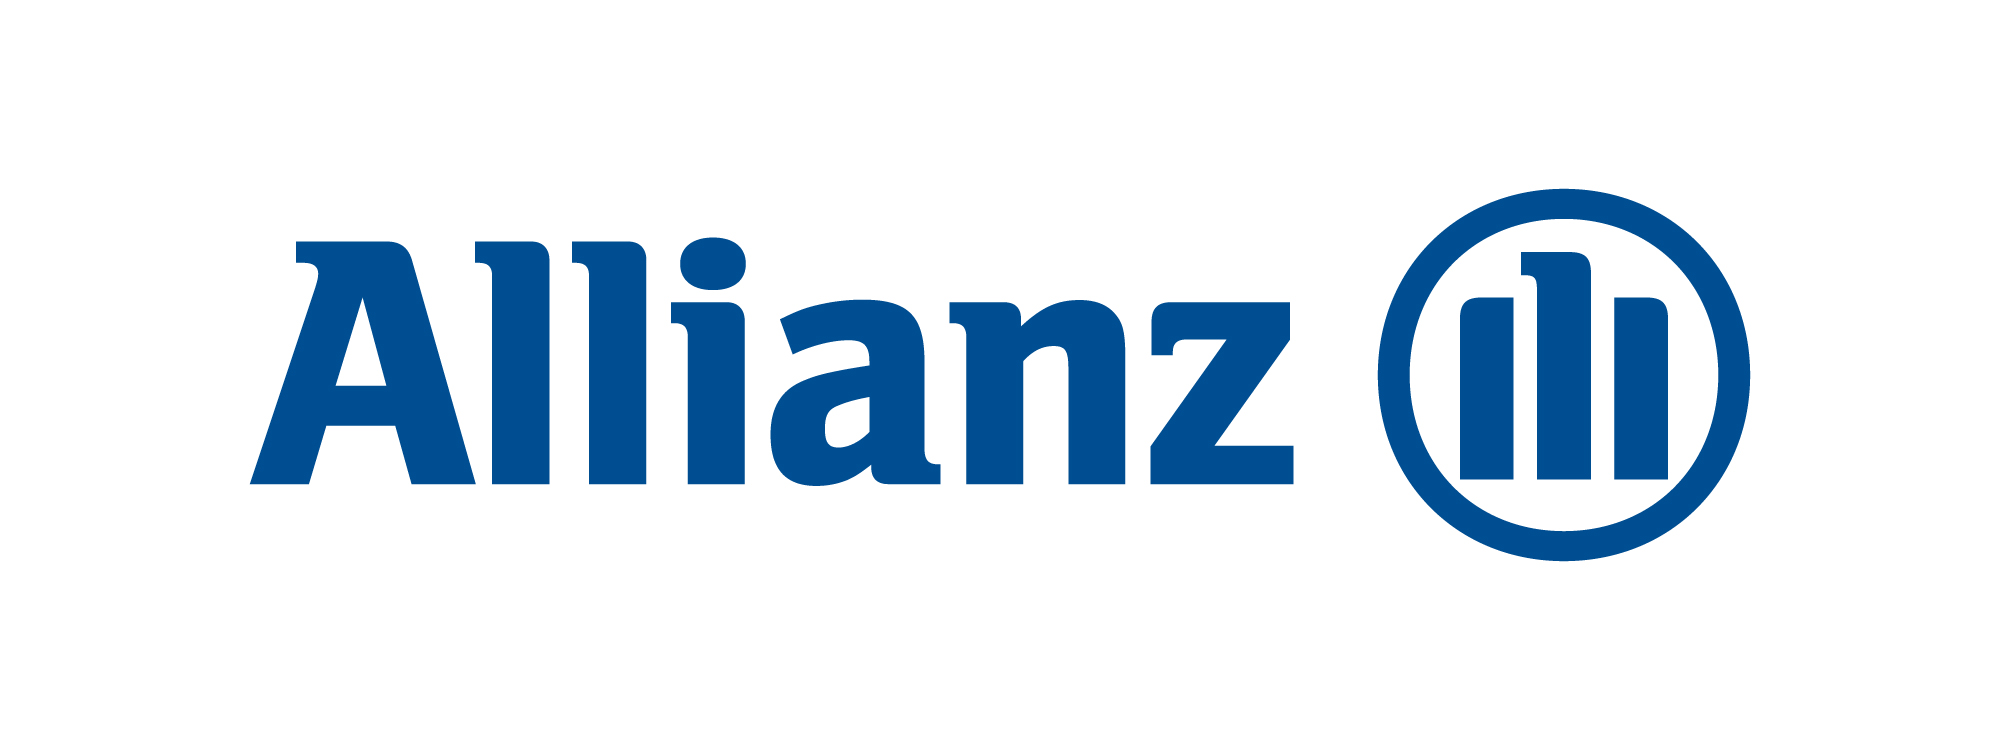 Страховая компания Allianz